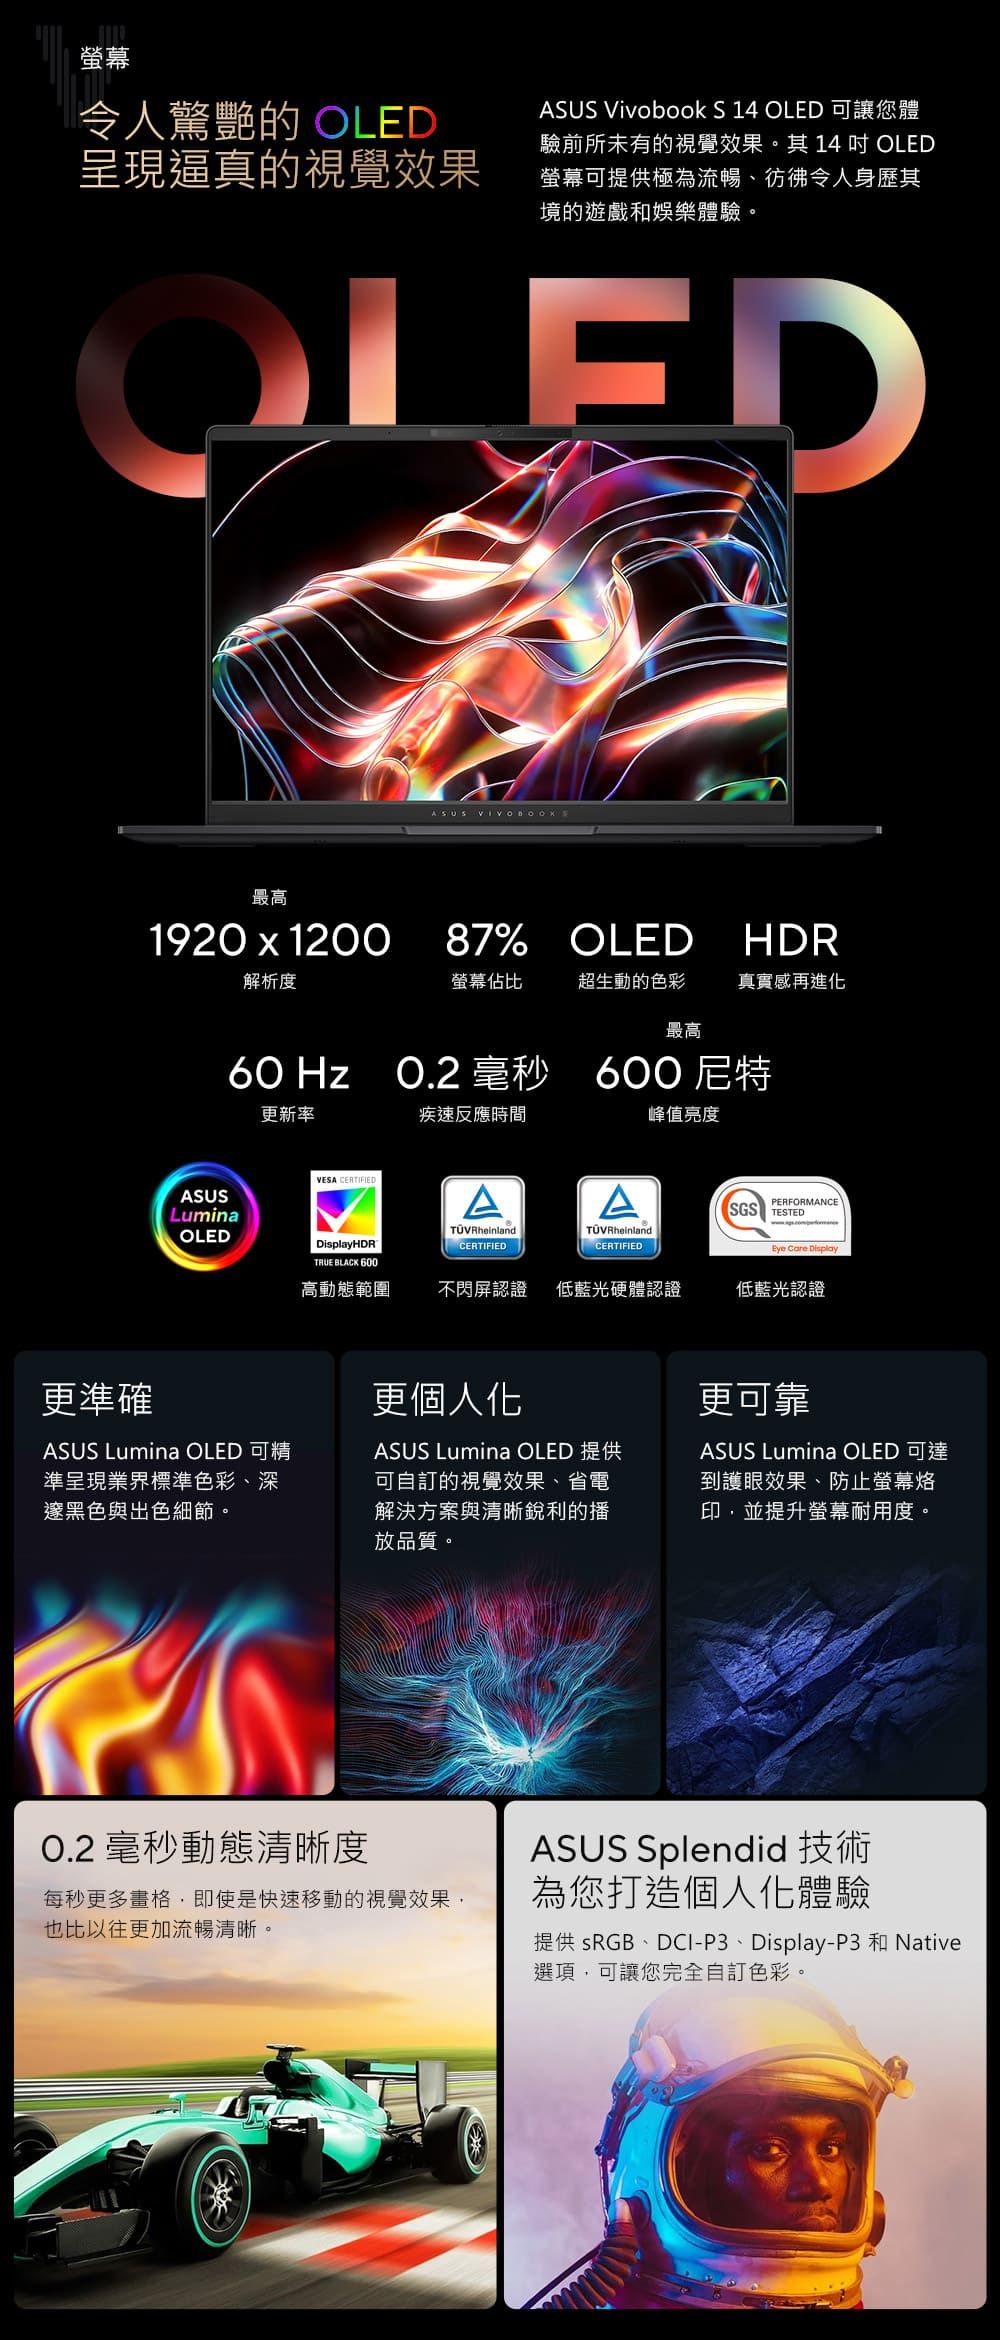 螢幕令人驚艷的OLED呈現逼真的視覺效果ASUS Vivobook S  OLED 可讓您體驗前所未有的視覺效果。其 14  OLED螢幕可提供極為流暢彷彿令人身歷其境的遊戲和娛樂體驗。OLED最高1920  1200解析度ASUS 87% OLED HDR螢幕佔比超生動的色彩真實感再進化最高 HzO.2 毫秒 600 尼特更新率疾速反應時間峰值亮度VESA CERTIFIEDASUSLuminaAAPERFORMANCESGS TESTEDTÜVRheinlandOLEDDisplayHDRCERTIFIEDTÜVRheinlandCERTIFIEDEye Care DisplayTRUE BLACK 600高動態範圍不閃屏認證 低藍光硬體認證低藍光認證更準確更個人化ASUS Lumina OLED 可精準呈現業界標準色彩、深邃黑色與出色細節。ASUS Lumina OLED 提供可自訂的視覺效果、省電解決方案與清晰銳利的播放品質。更可靠ASUS Lumina OLED 可達到護眼效果、防止螢幕烙印,並提升螢幕耐用度。O.2 毫秒動態清晰度每秒更多畫格,即使是快速移動的視覺效果,也比以往更加流暢清晰。ASUS Splendid 技術為您打造個人化體驗提供 sRGB、DCI-P3、Display-P3 和 Native選項,可讓您完全自訂色彩。